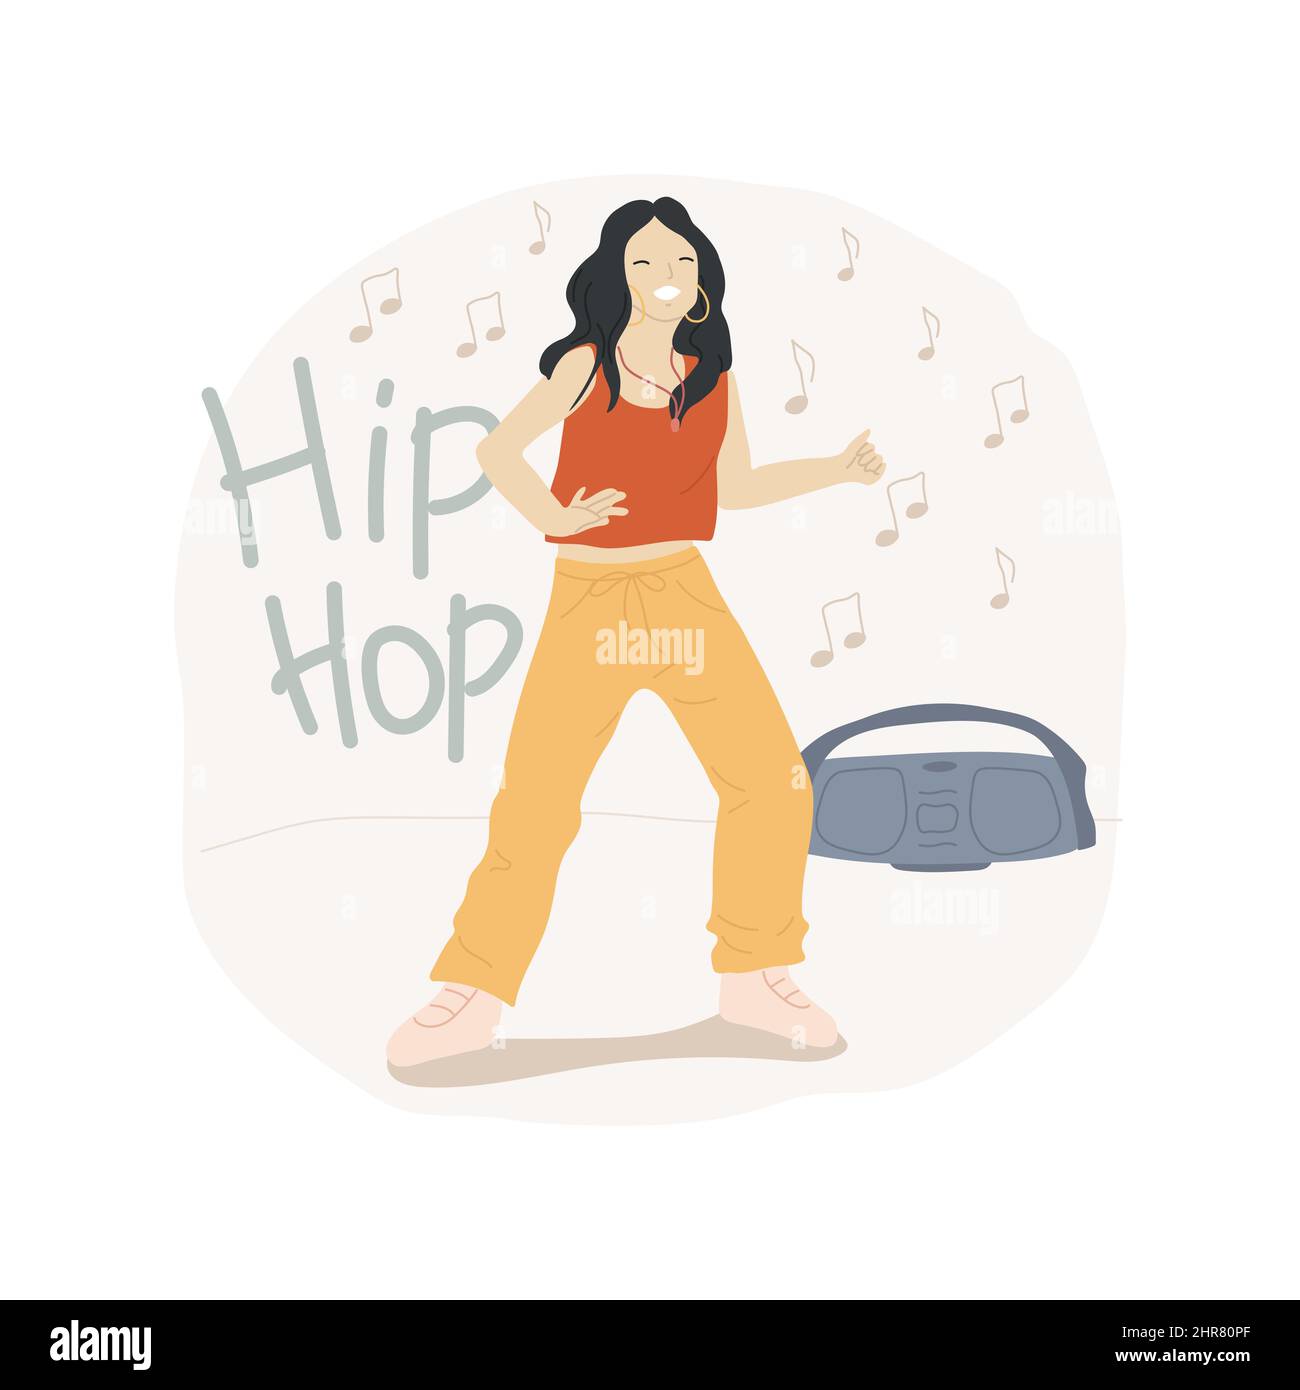 Ilustración de vectores de dibujos animados aislados de la cultura hip-hop.  Baile de niña con estilo hip-hop, rendimiento de adolescentes, estilo de  vida de adolescentes, actividades en el interior, entretenimiento y tiempo